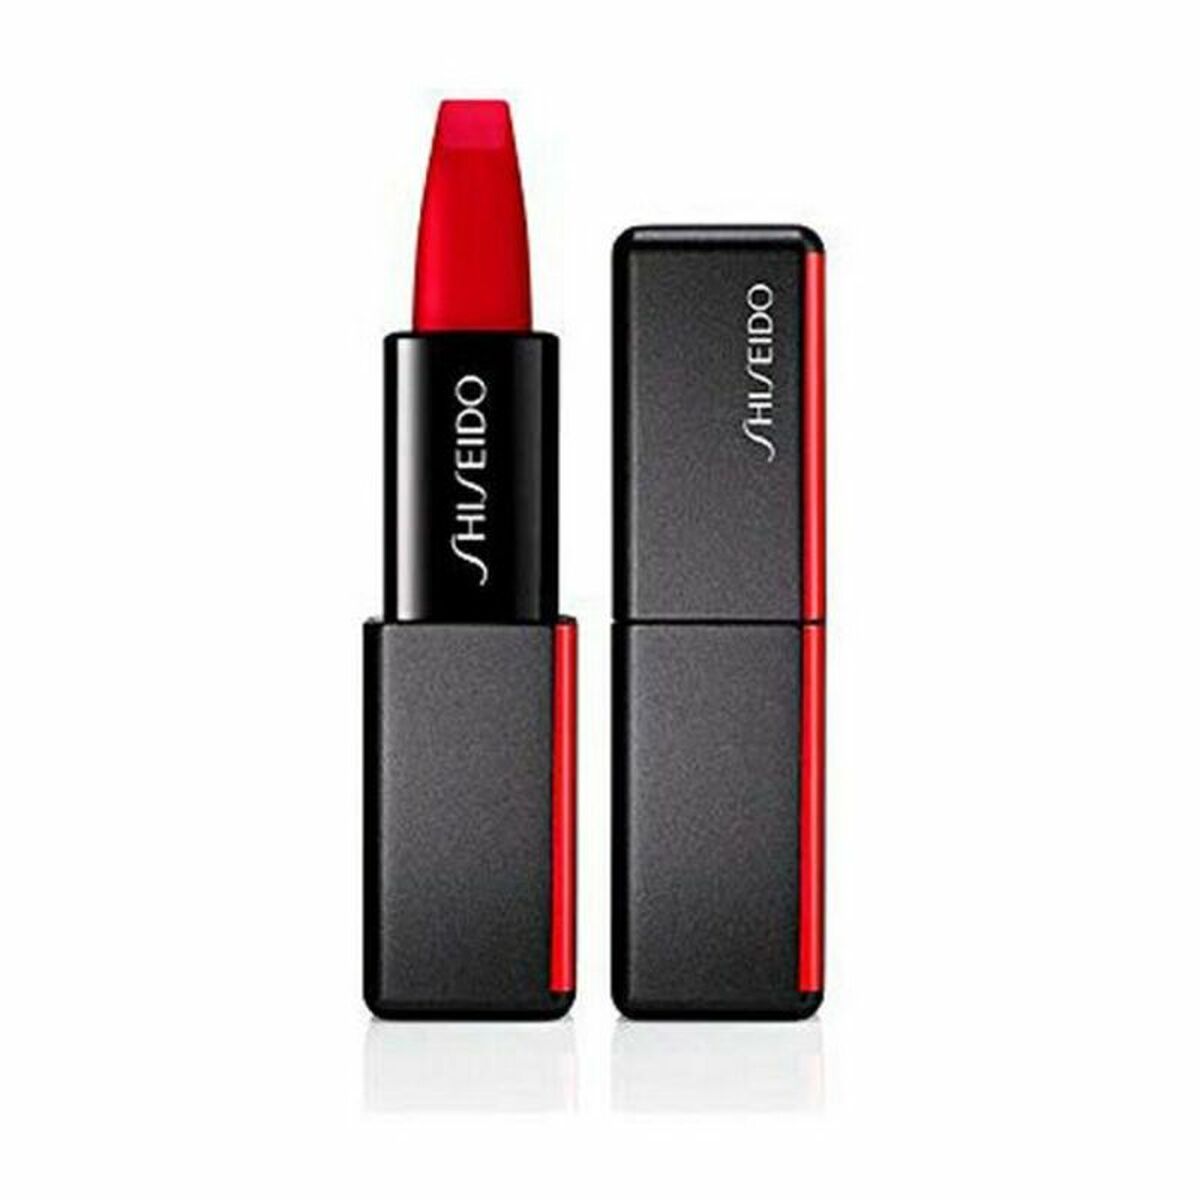 Skjønnhetstips Modernmatte Powder Shiseido